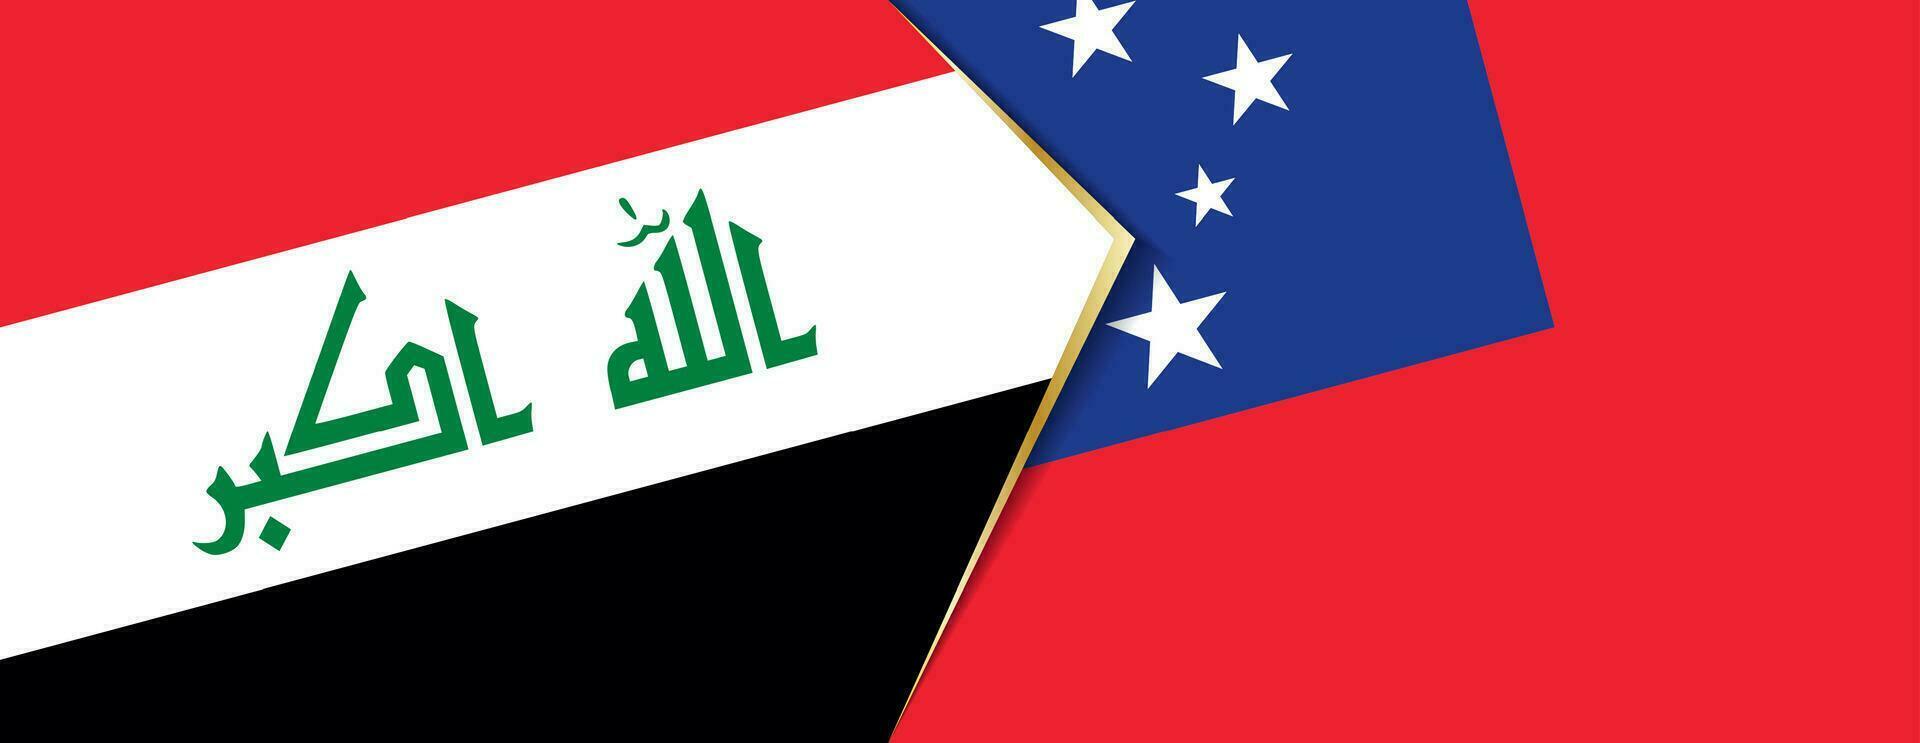 Irak y Samoa banderas, dos vector banderas